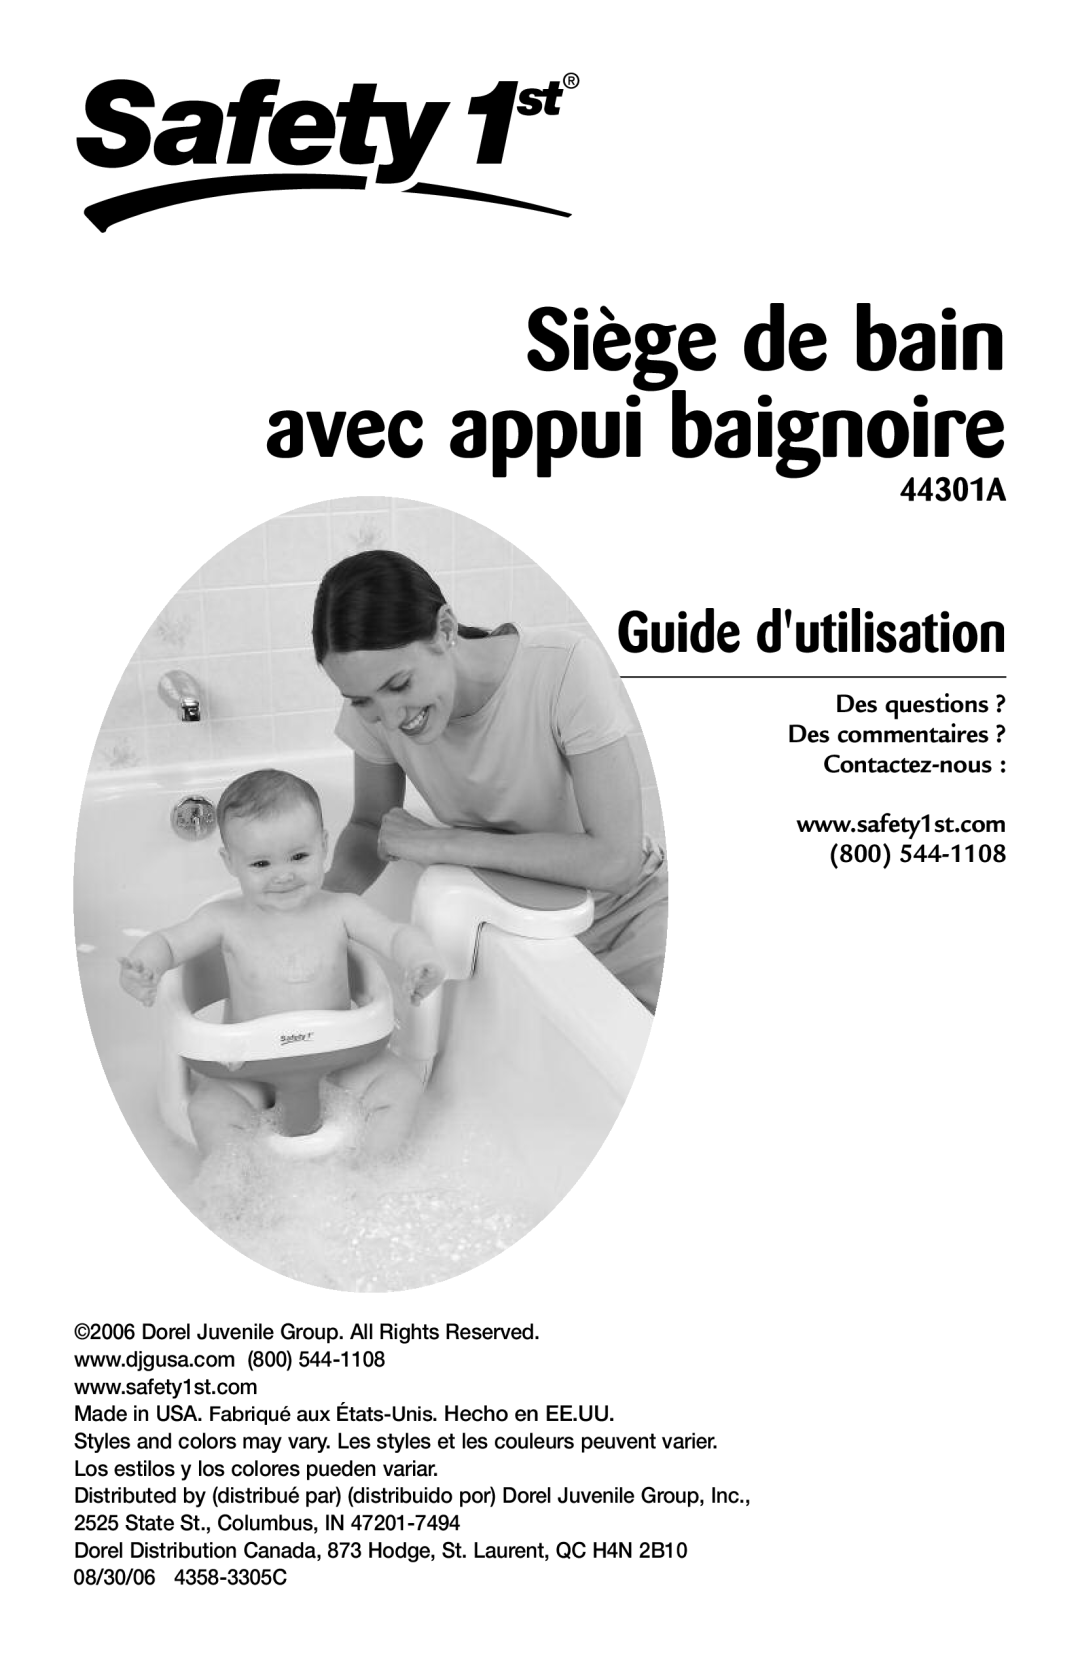 Safety 1st 44301A manual Siège de bain avec appui baignoire, Guide dutilisation 